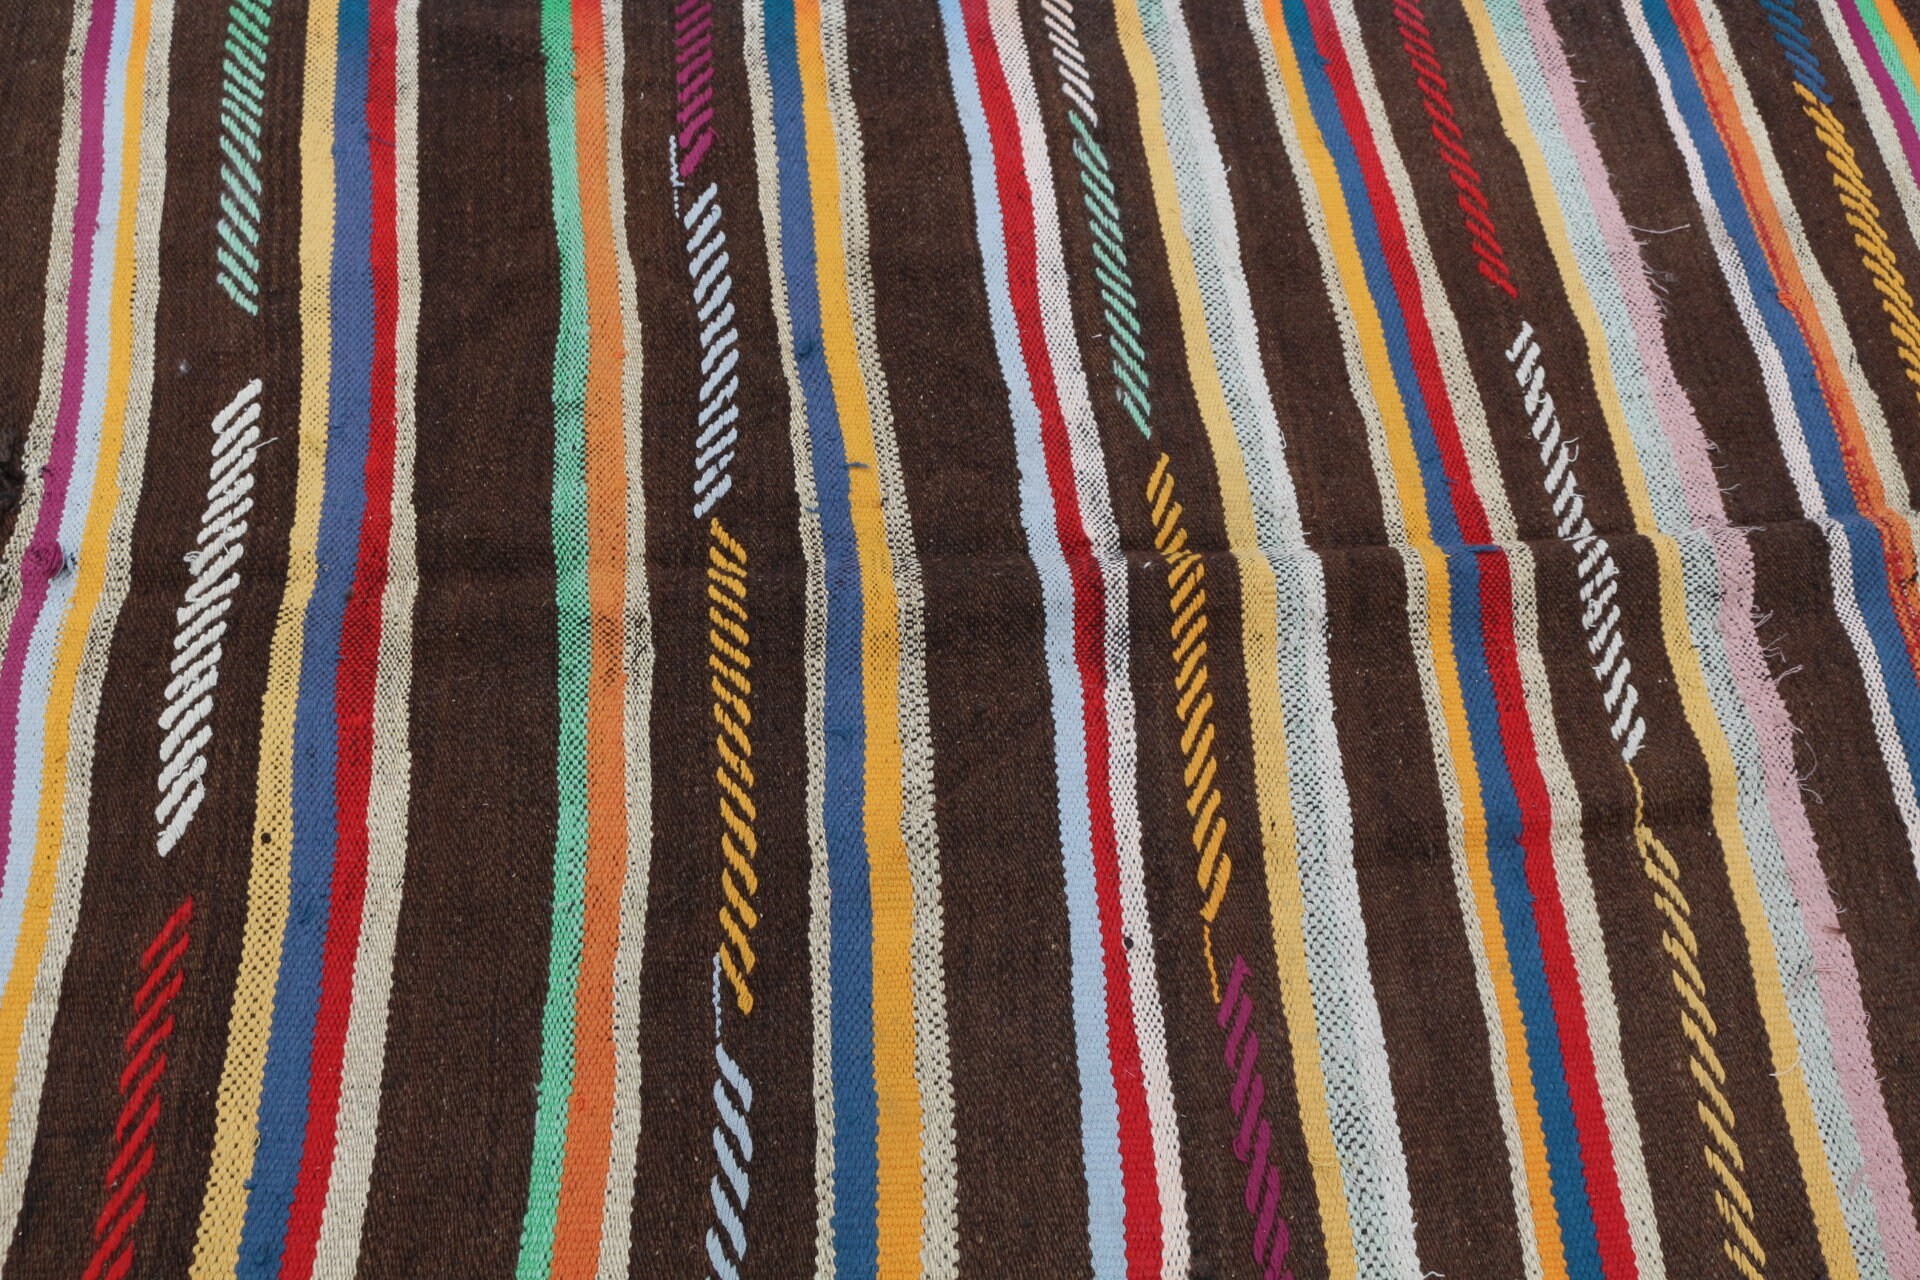 Vintage Rug, Oriental Rug, Kilim, 4.4x12.4 ft Runner Rug, Turkish Rug, Kitchen Rug, Rugs for Runner, Moroccan Rug, Brown Bedroom Rugs